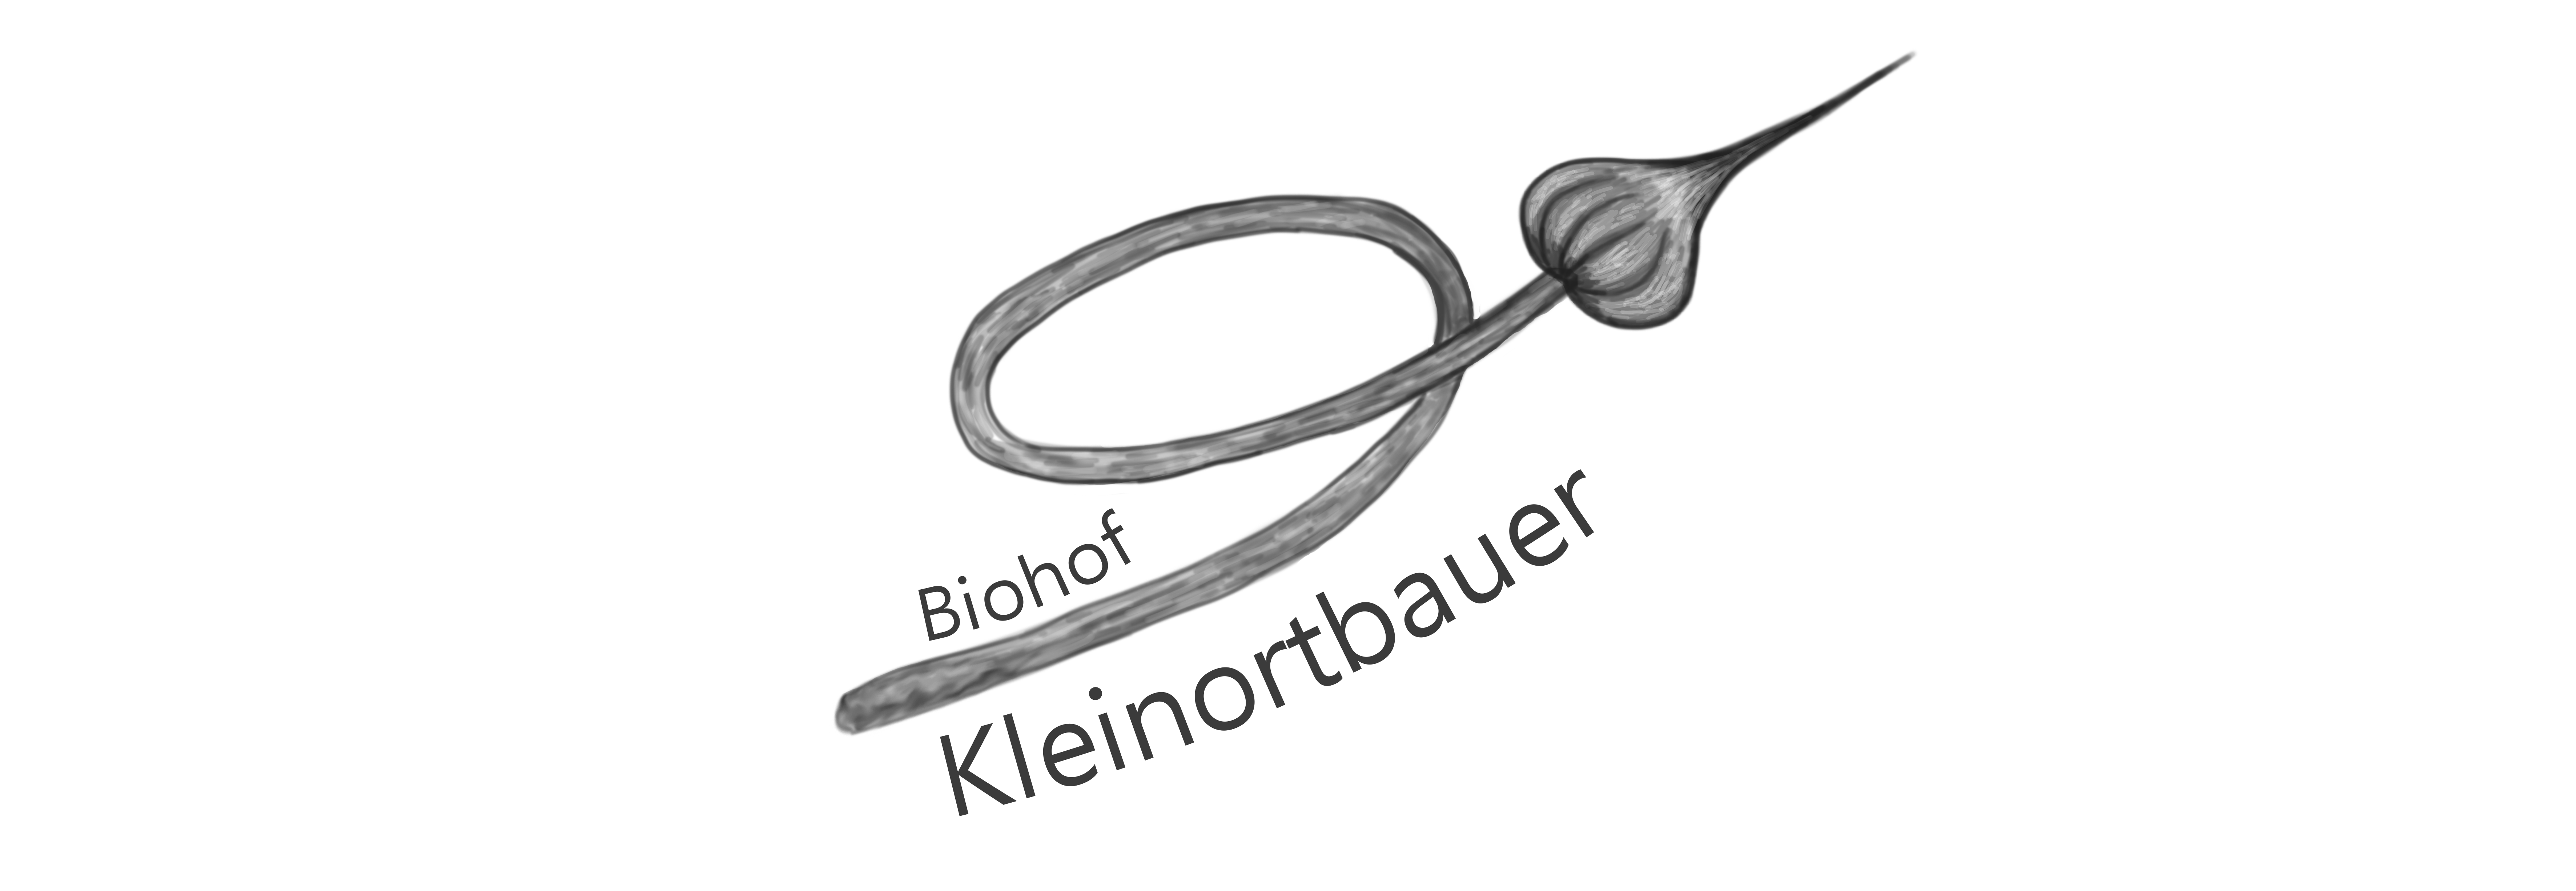 Biohof Kleinortbauer Fam. Huemer